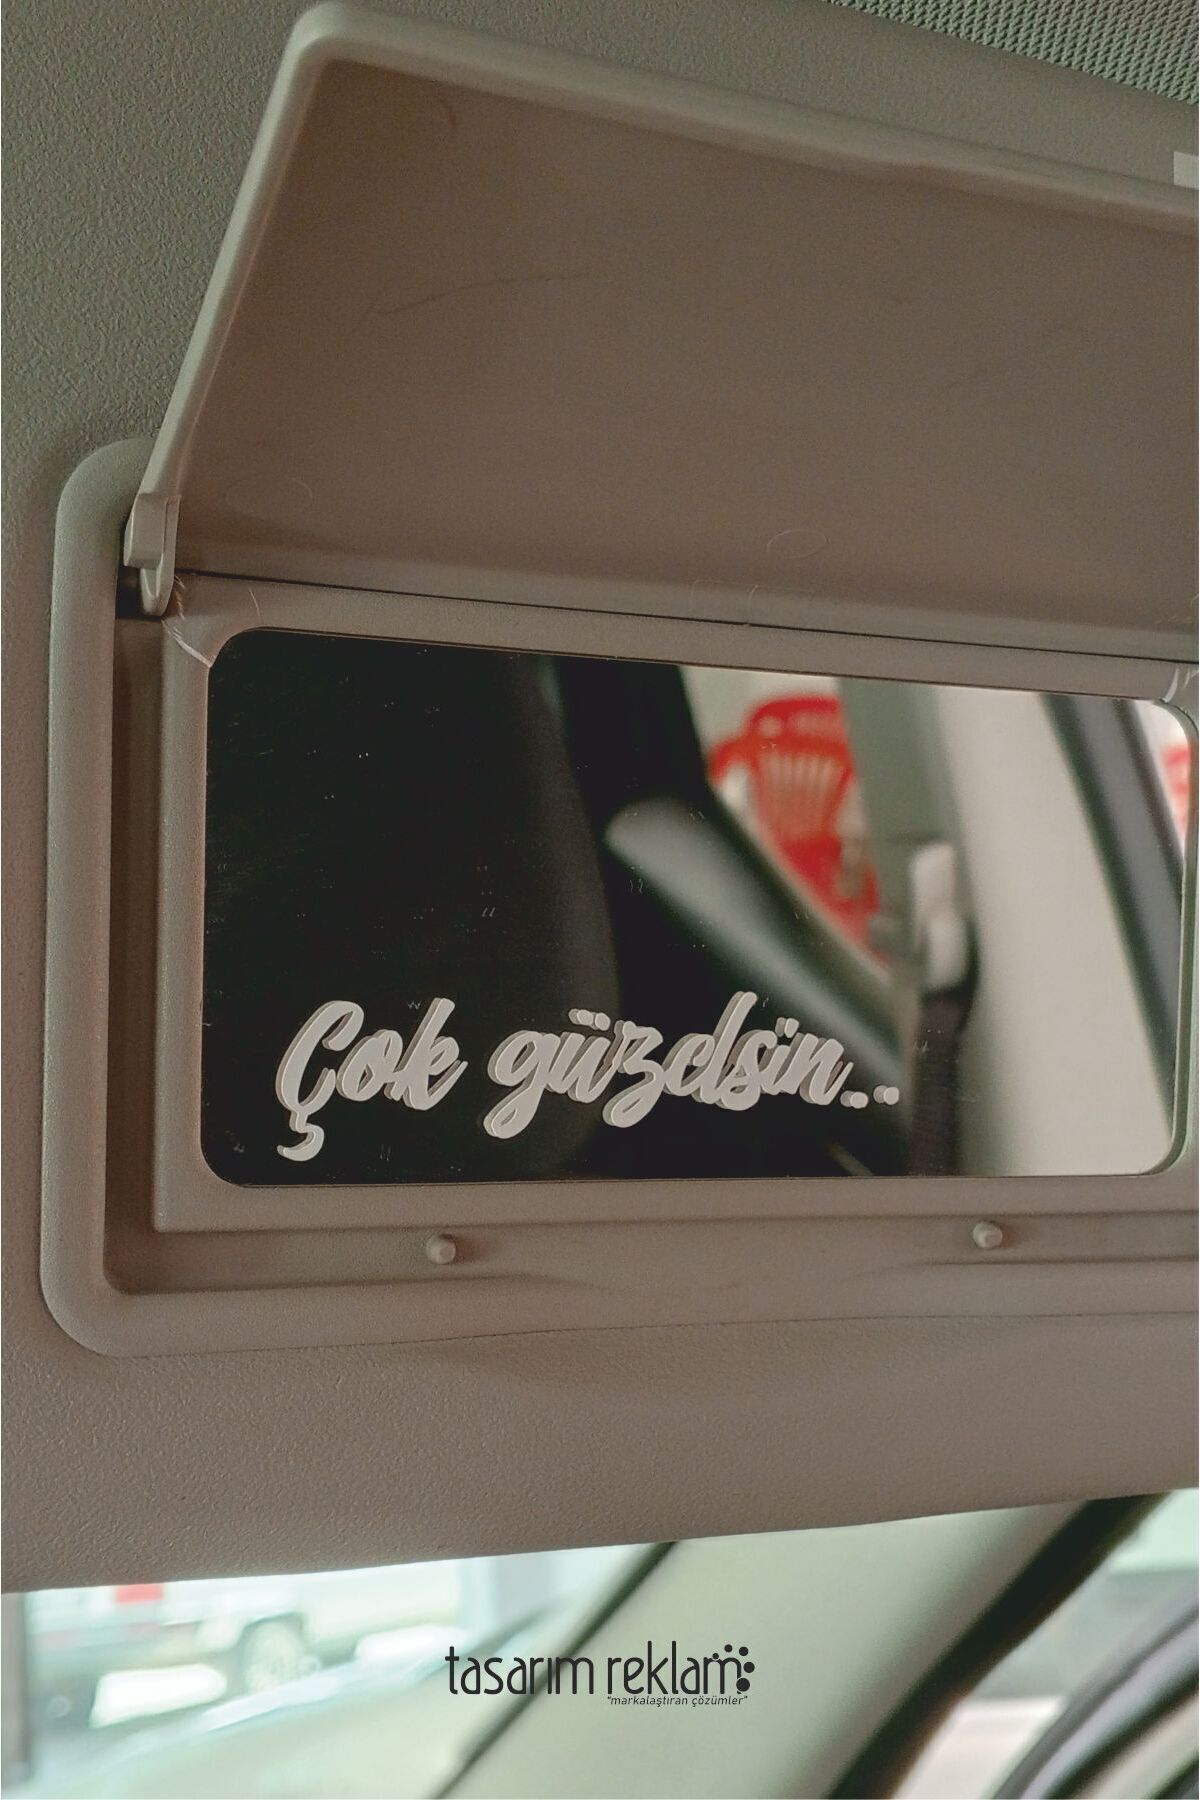 TASARIMREKLAM Çok Güzelsin Oto Sticker Güneşlik Ayna Yazısı Araba Cam Sticker Motosiklet Sticker